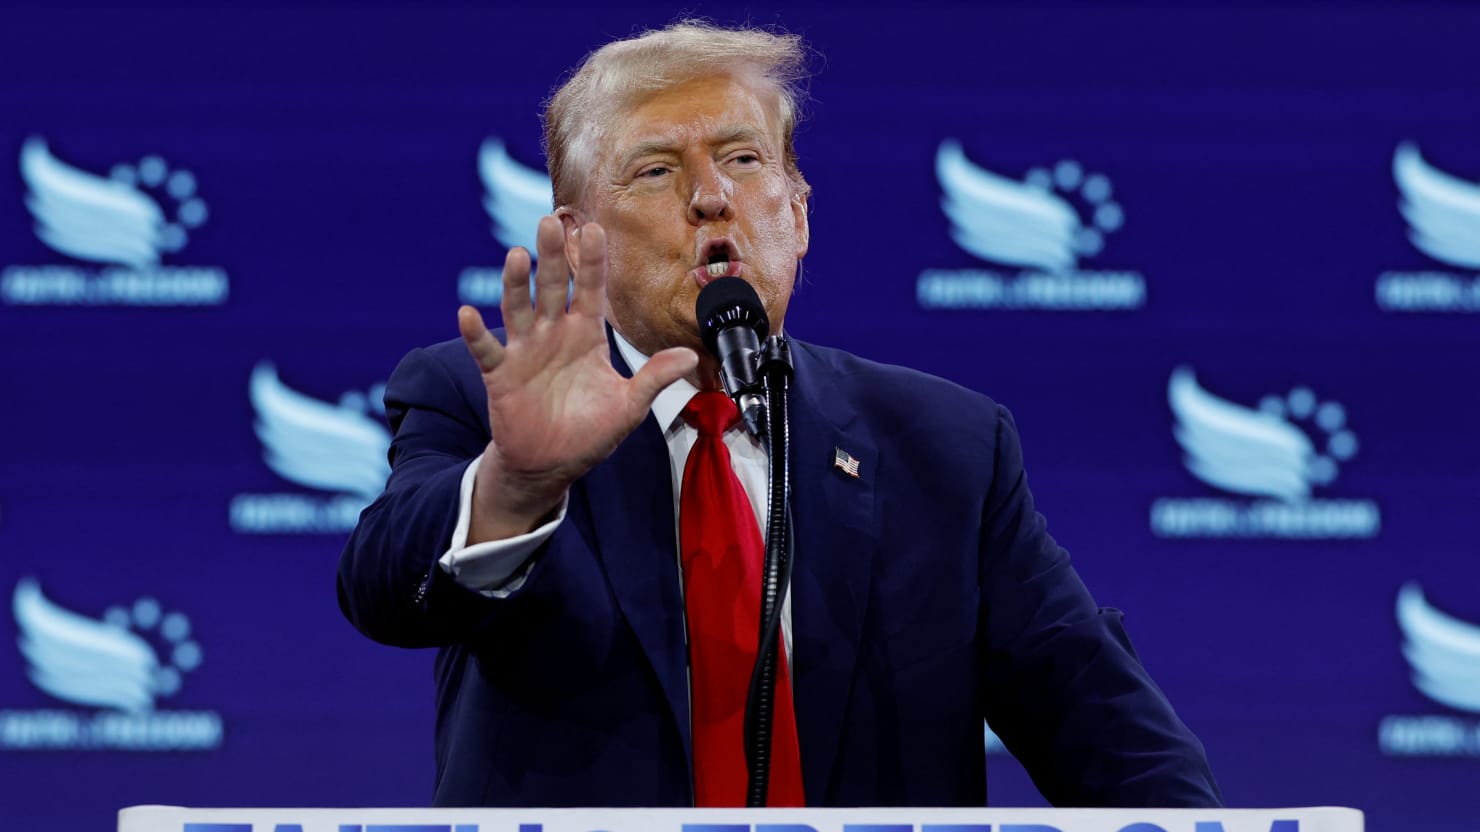 L’ancien président Donald Trump dit à la foule qu’il veut un « dôme de fer » au-dessus de l’Amérique